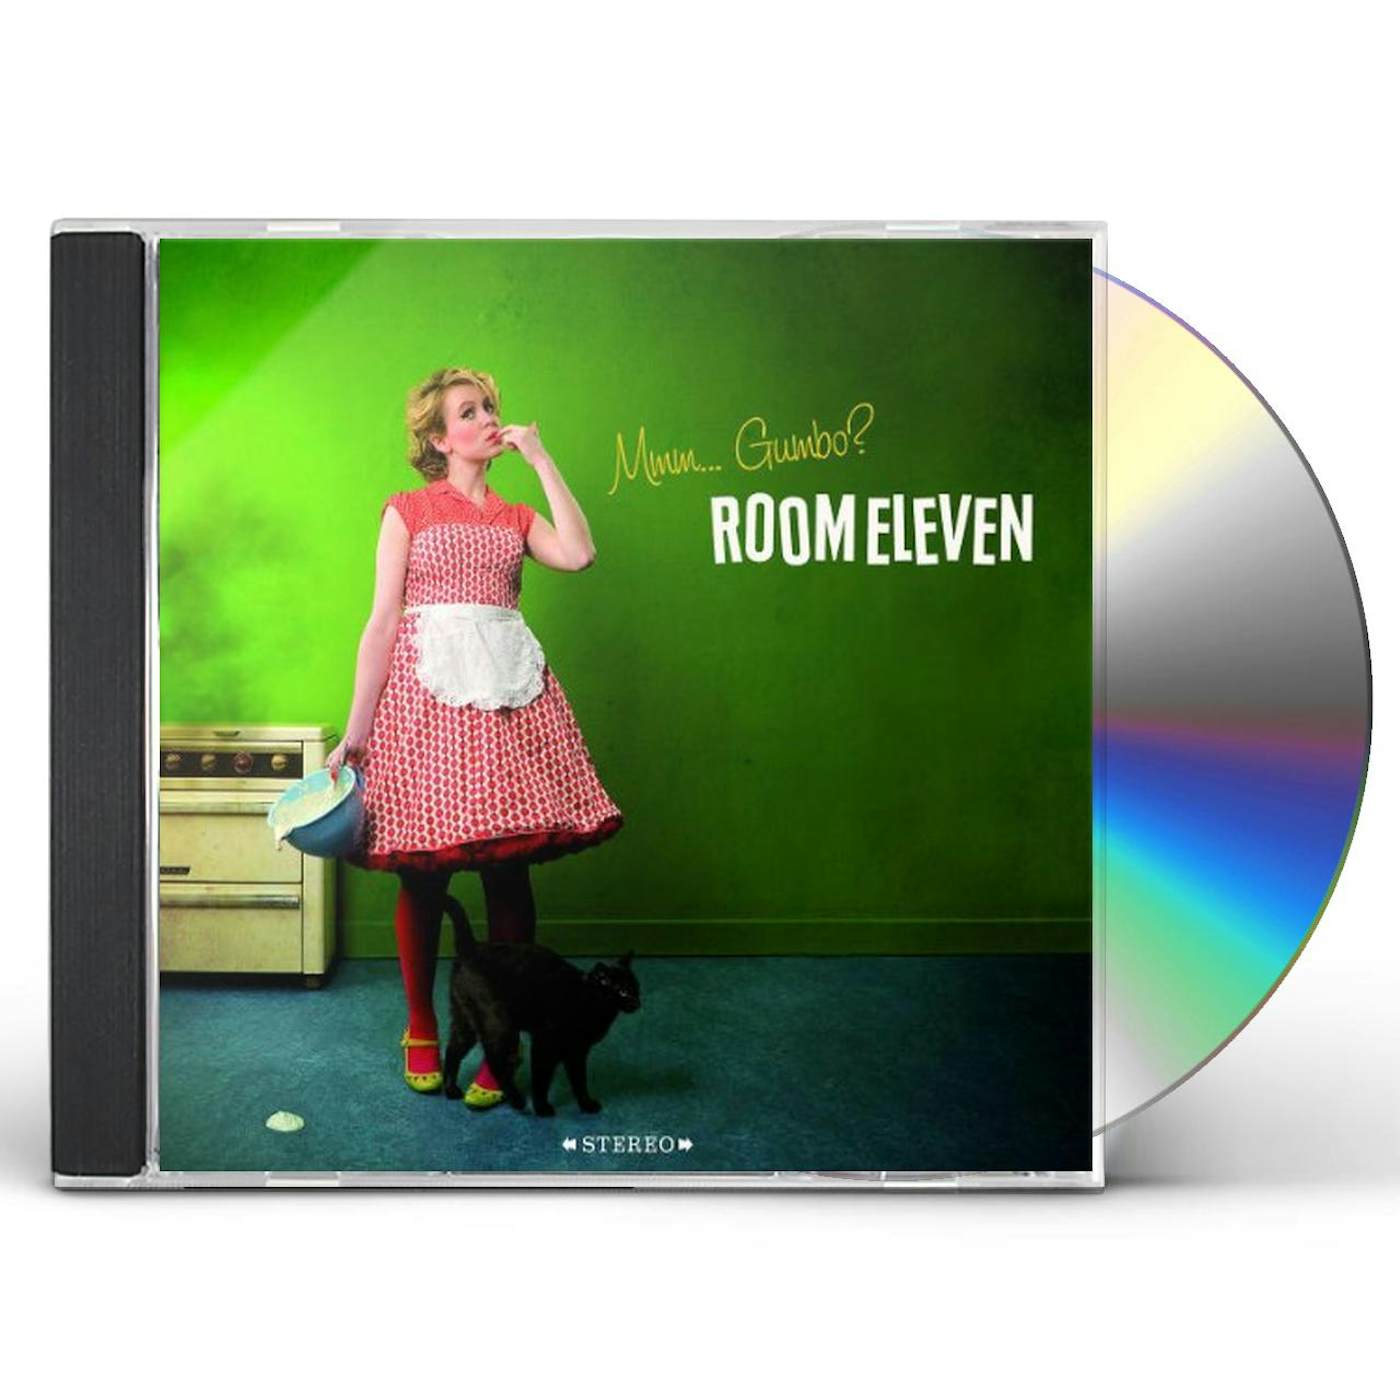 Room Eleven MMM GUMBO CD